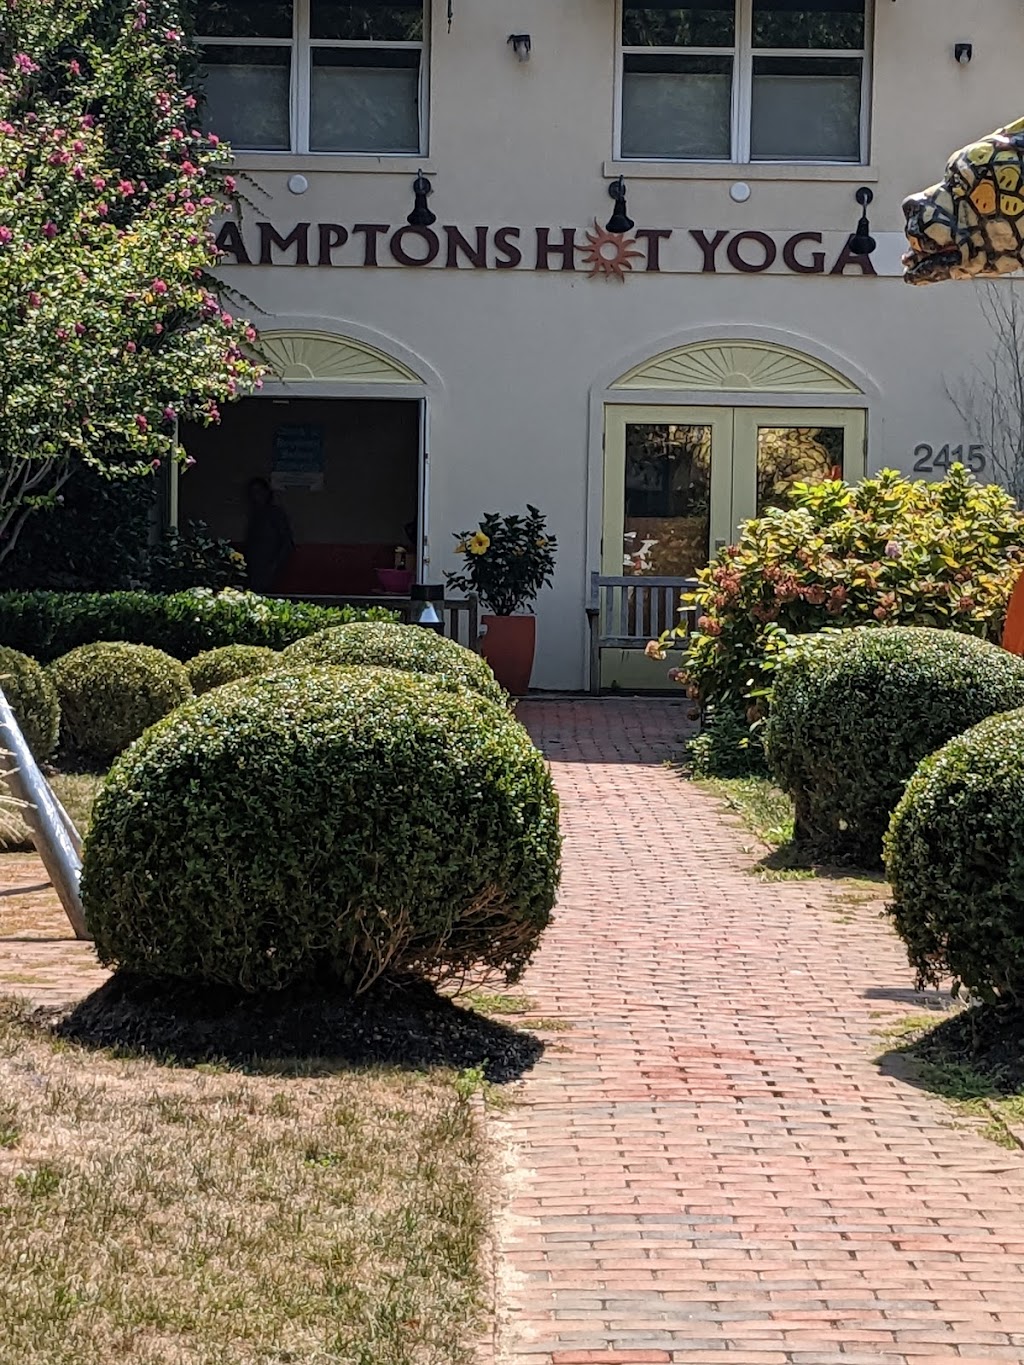 Hamptons Hot Yoga | 2415 Montauk Hwy, Bridgehampton, NY 11932 | Phone: (631) 537-9642